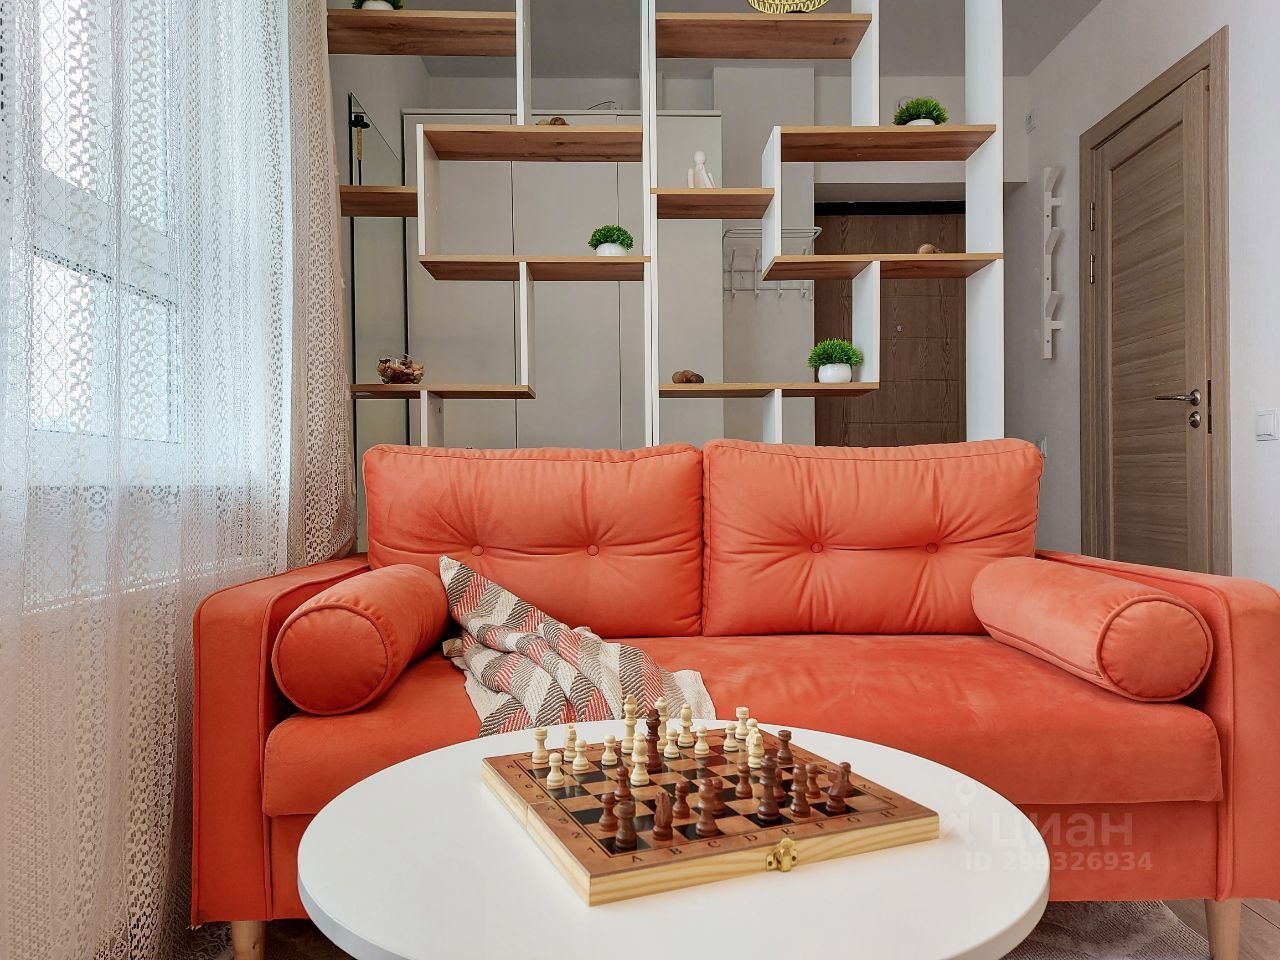 Уютная квартира в Екатеринбурге. Просторная кухня 20 кв.м. Светлый интерьер, удобный диван и стильные полки. 9 этаж, 1 комната.